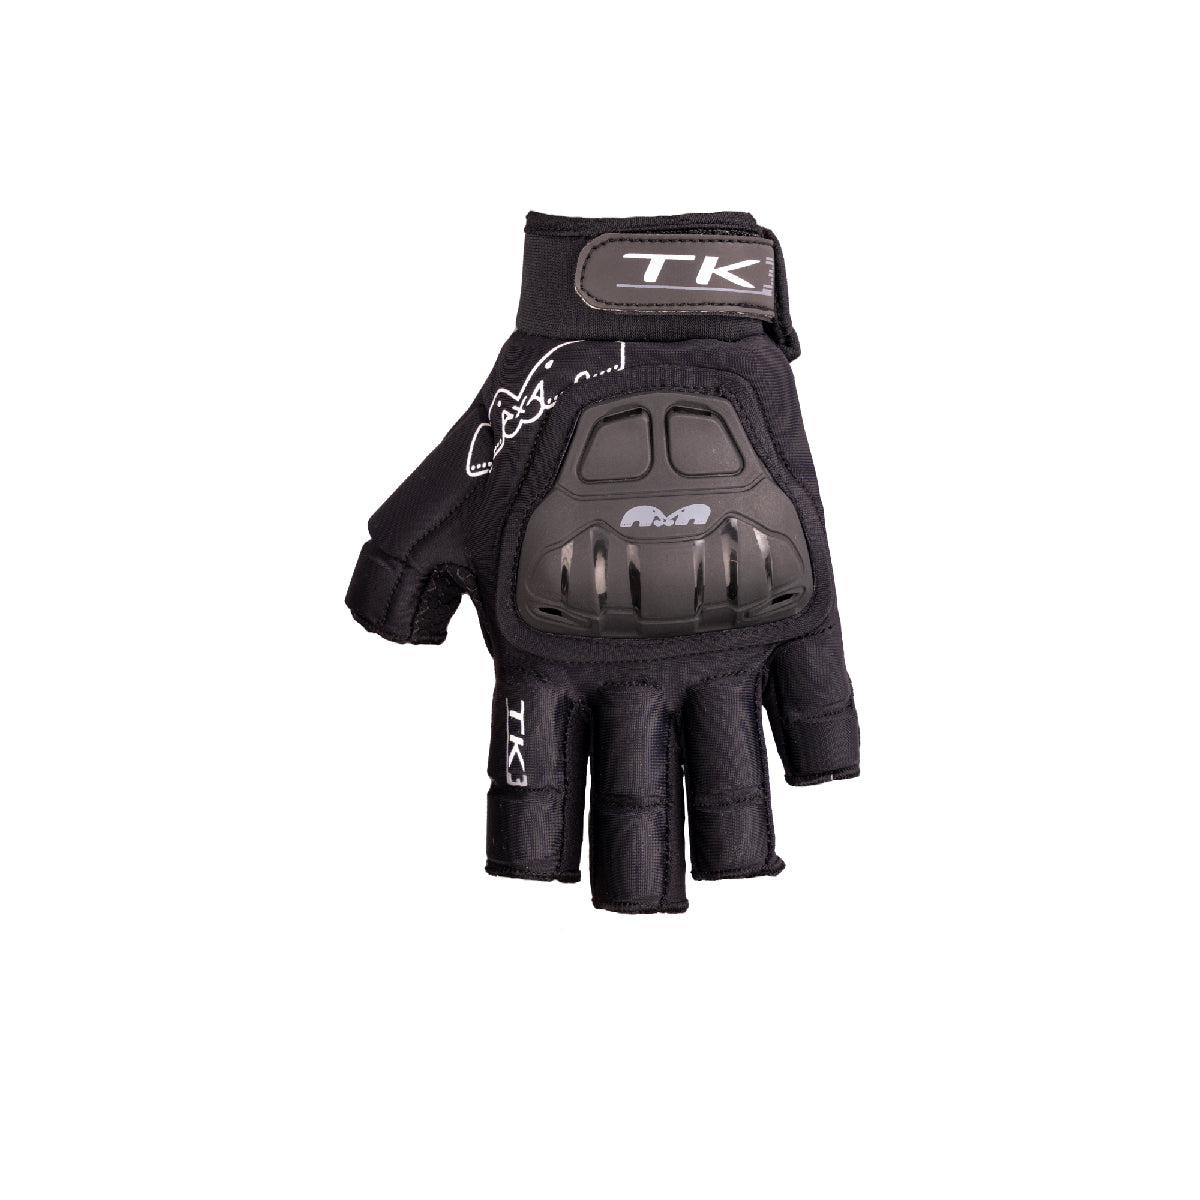 TK 3 Player Glove - LH